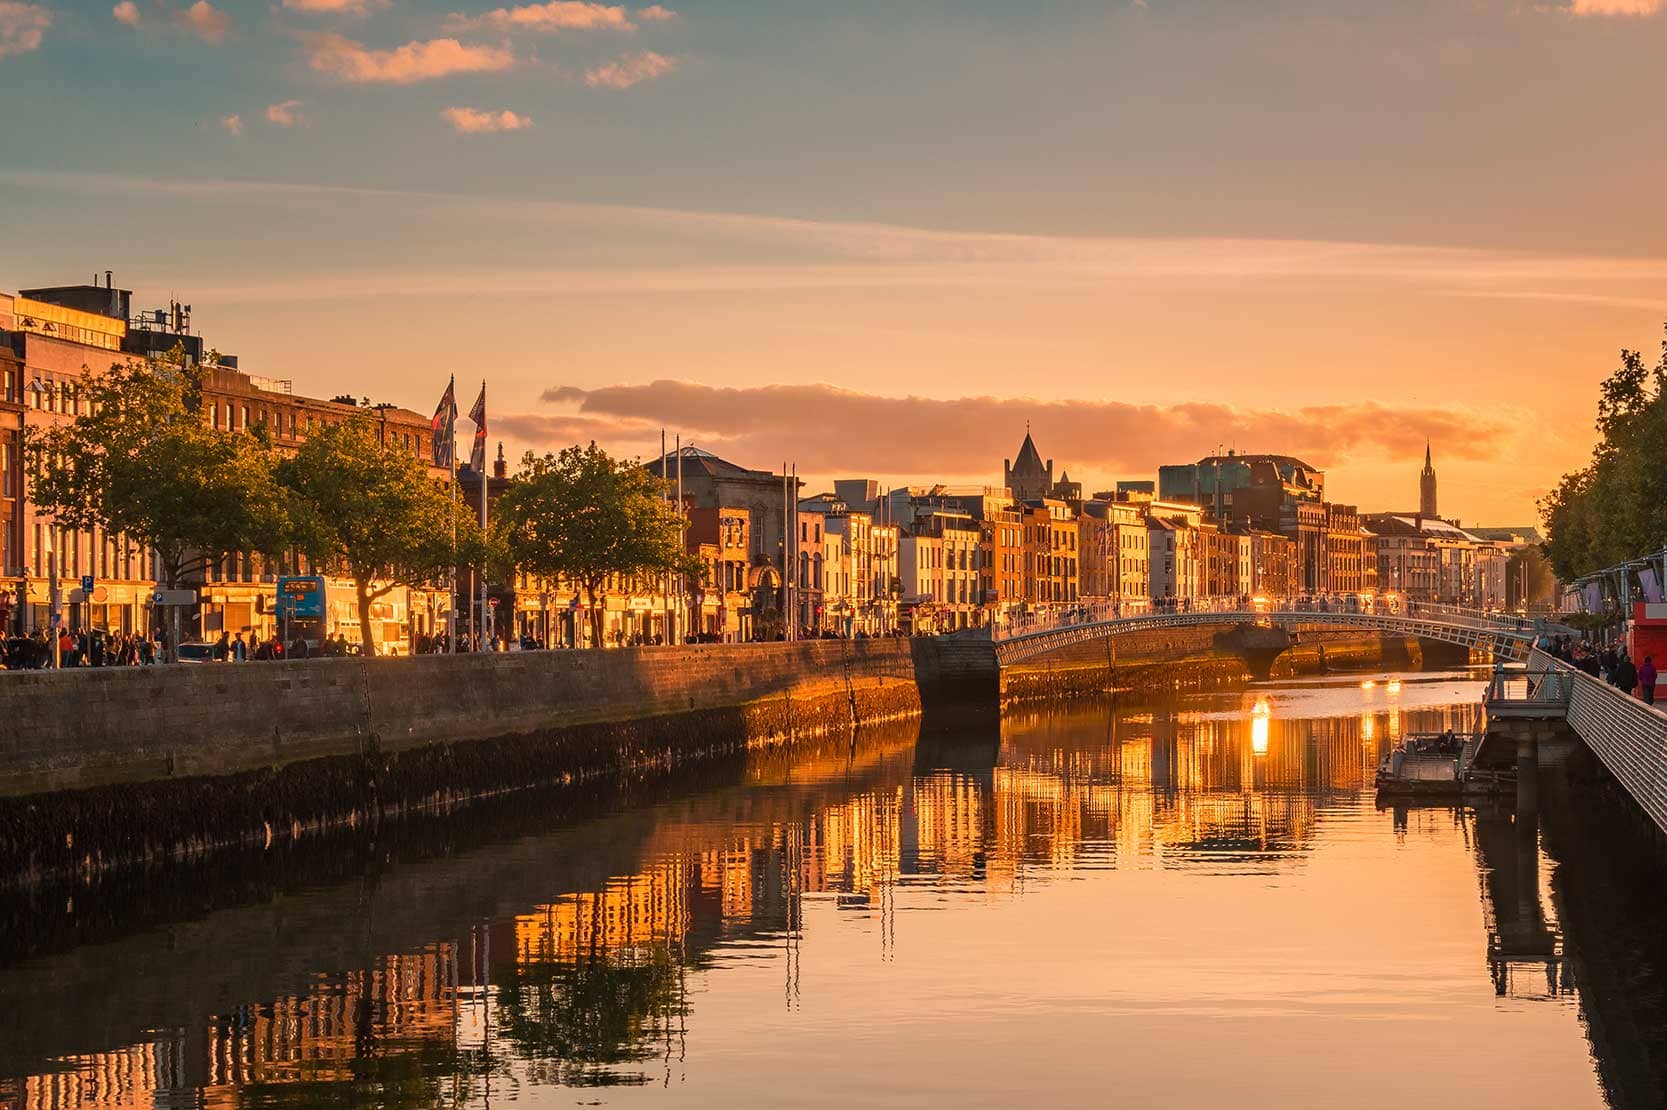 Dublin city taken during sunset